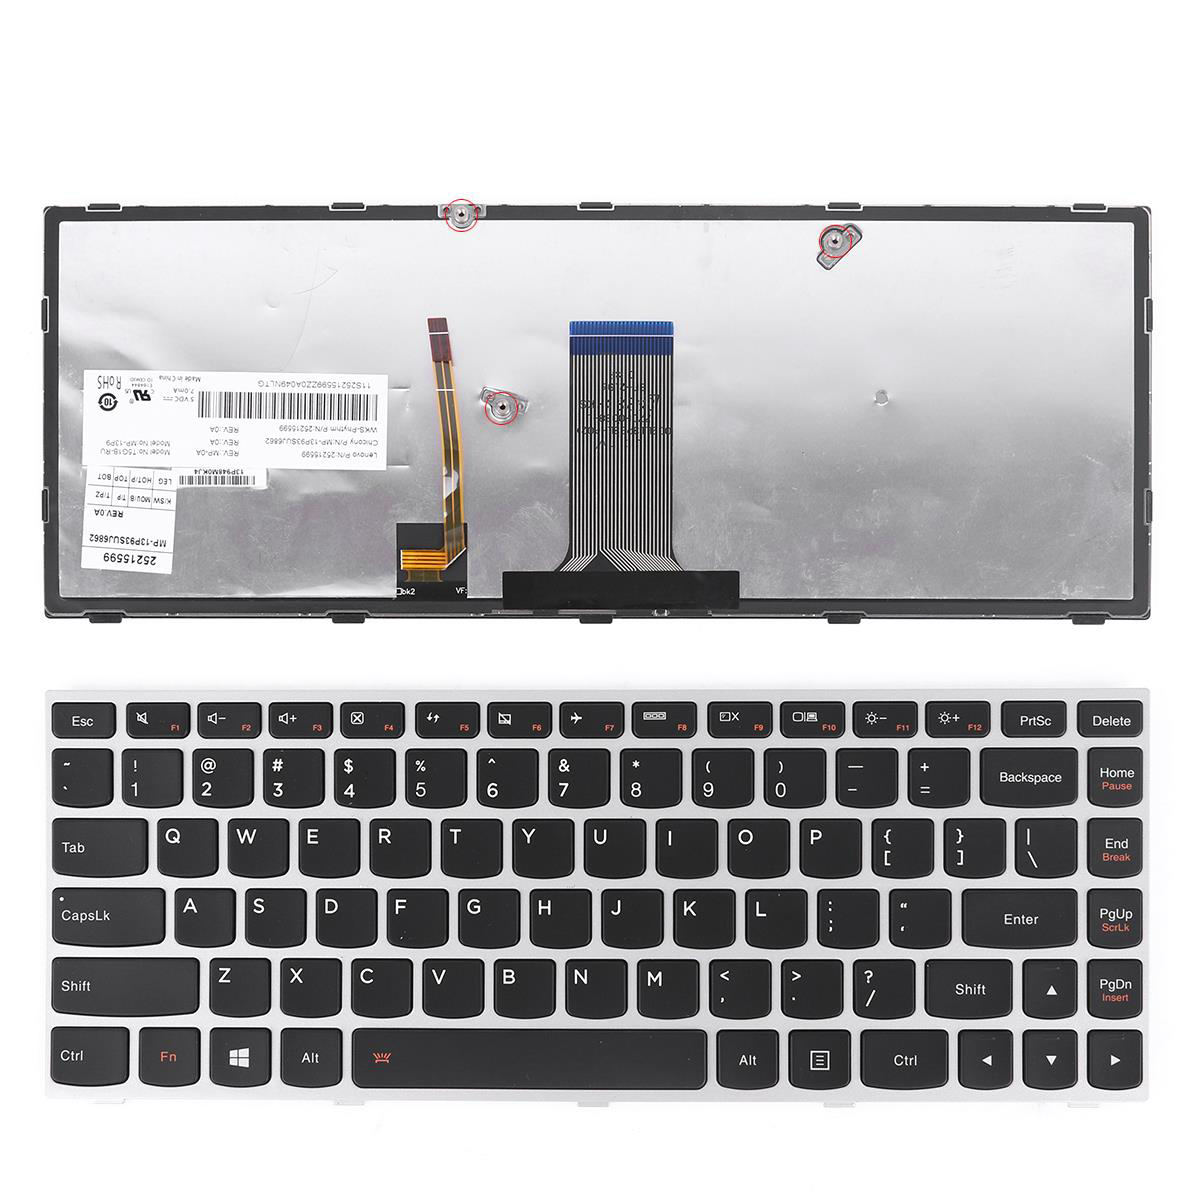 Nuevo teclado de reemplazo de los Estados Unidos para Lenovo G40-30 G40-45 G40-70 G40-45 G40-70 G40-70M G40-80 G41-35 E41-80 Marco de plata portátil con retroiluminado